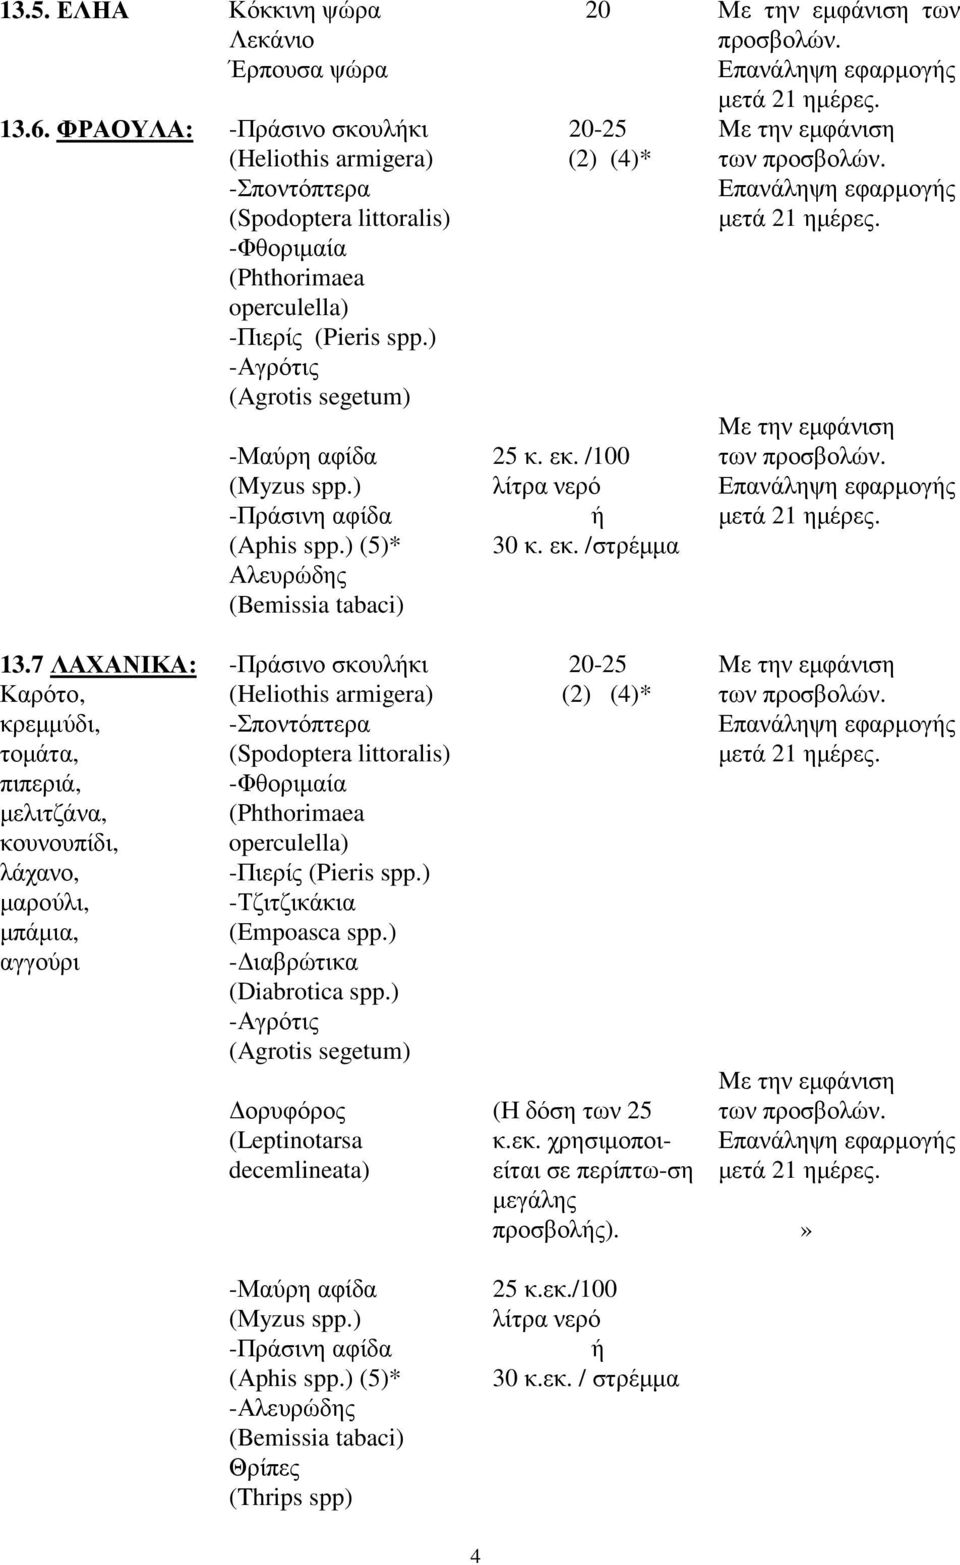 7 ΛΑΧΑΝΙΚΑ: Καρότο, κρεµµύδι, τοµάτα, πιπεριά, µελιτζάνα, κουνουπίδι, λάχανο, µαρούλι, µπάµια, αγγούρι -Πράσινο σκουλήκι (Heliothis armigera) -Σποντόπτερα (Spodoptera littoralis) -Φθοριµαία